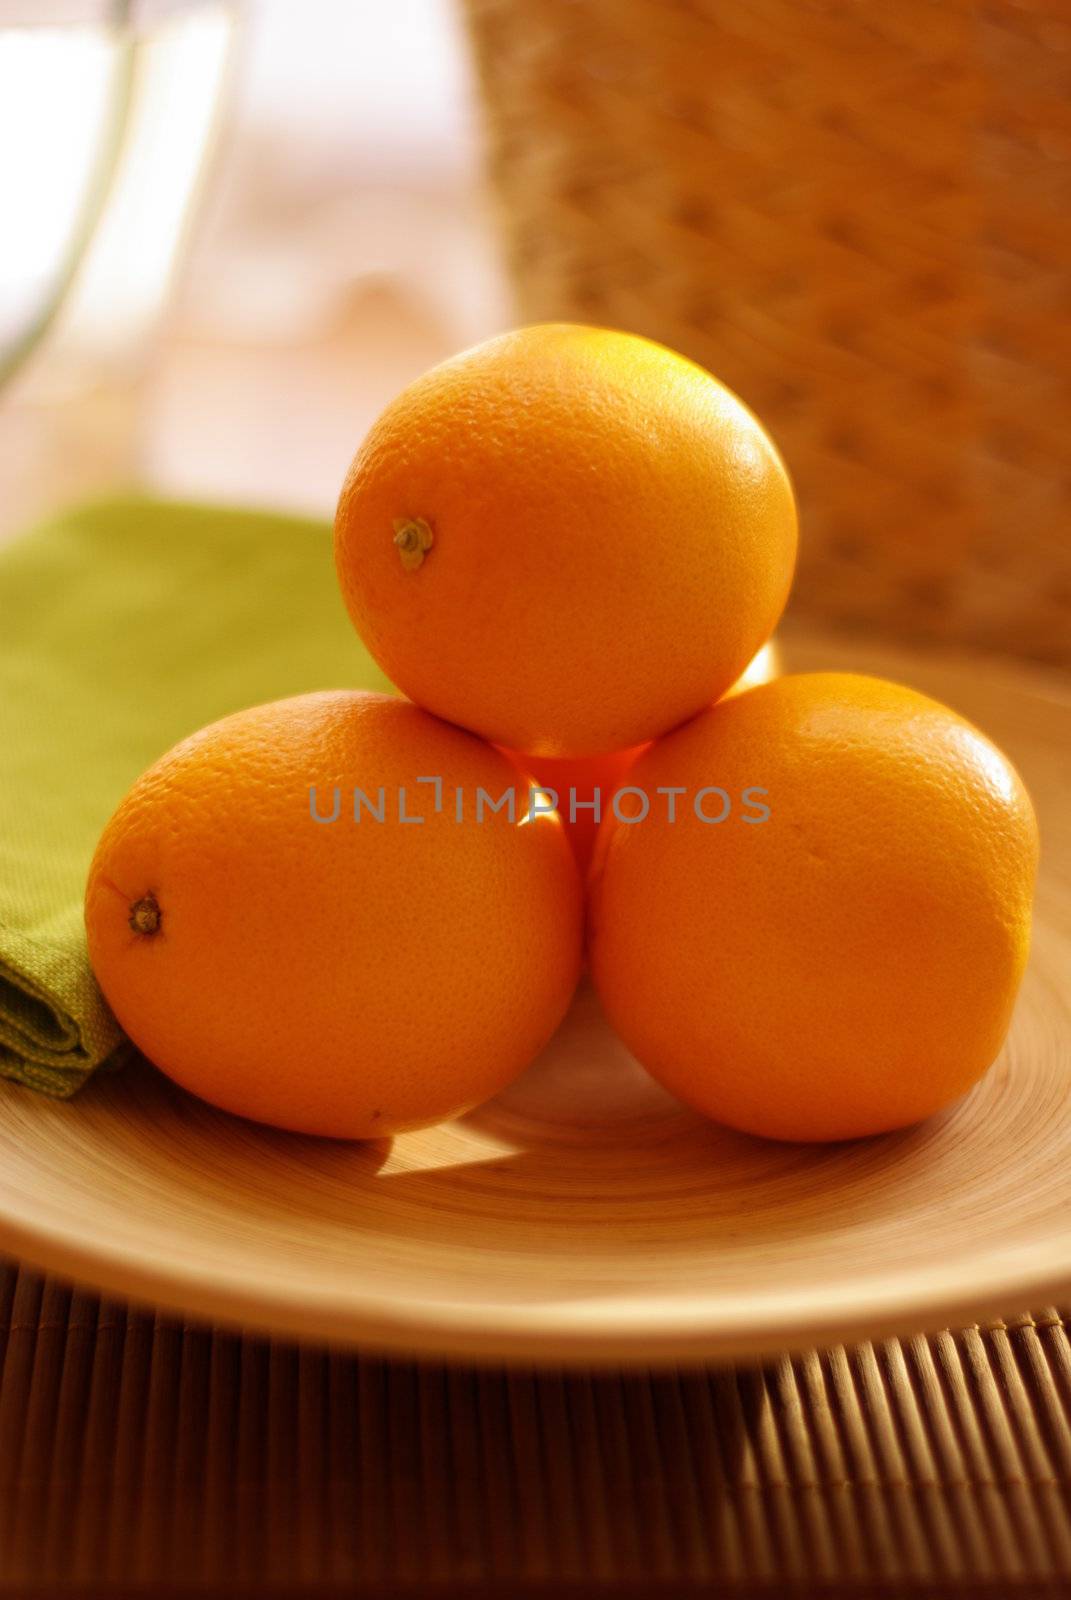 orange in the kitchen, pentax k 10 d, 
50 mm 2,0 